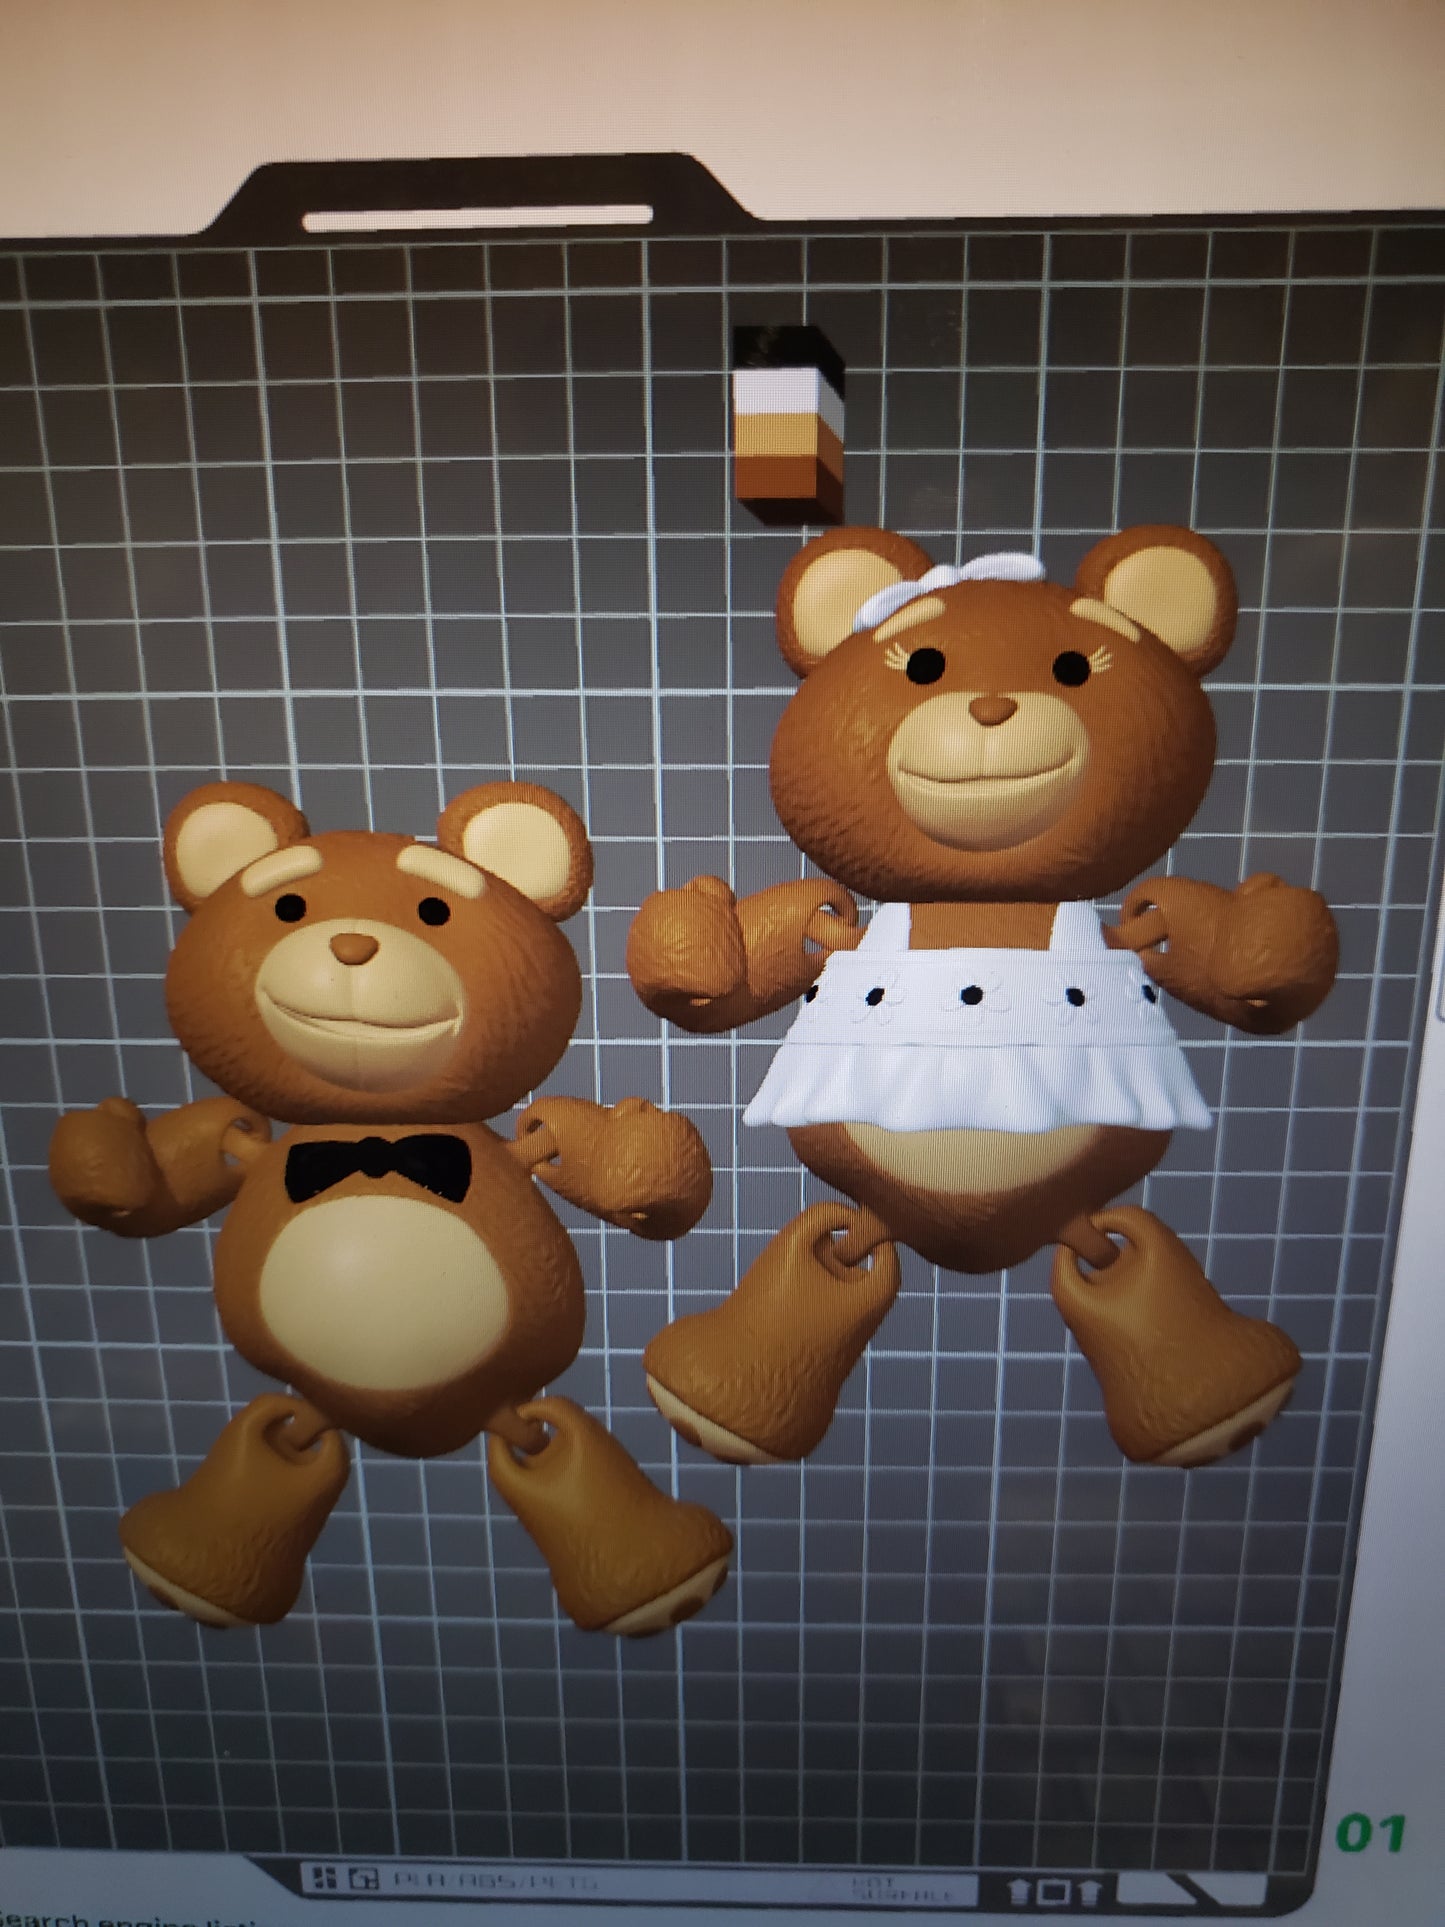 Mr. and Mrs. Teddy Bear